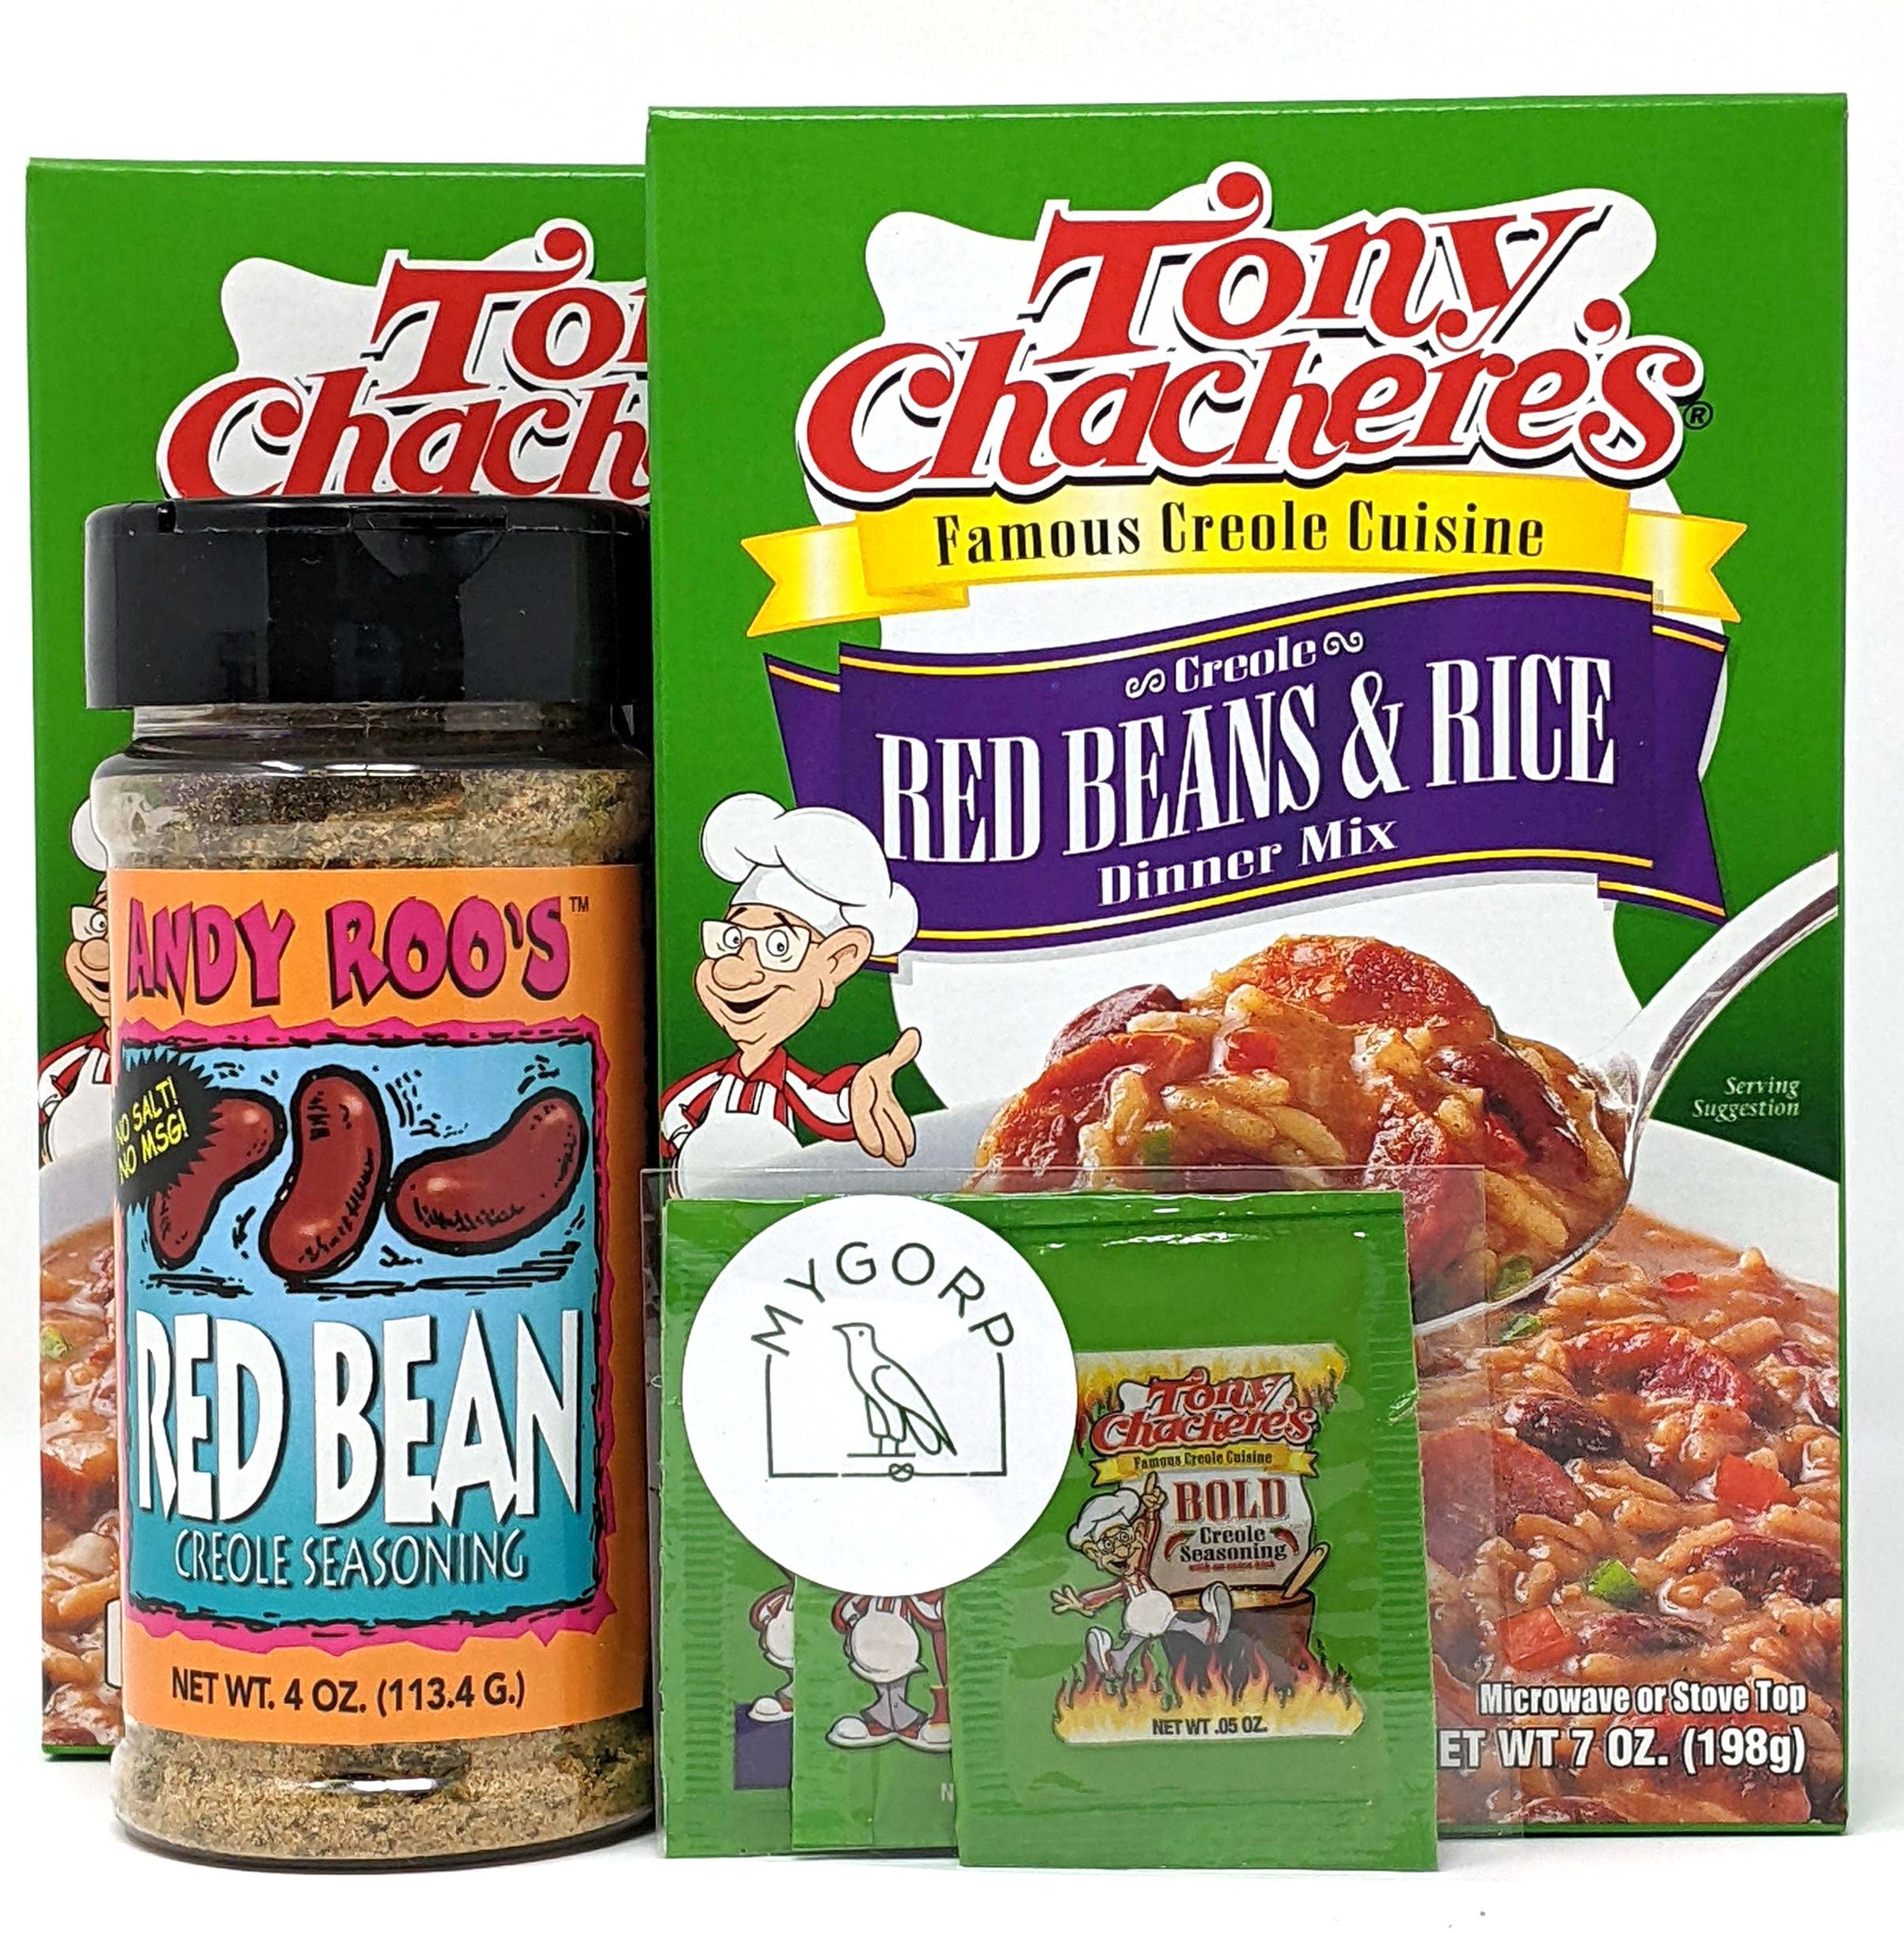 Tony Chachere's Bold Creole Seasoning